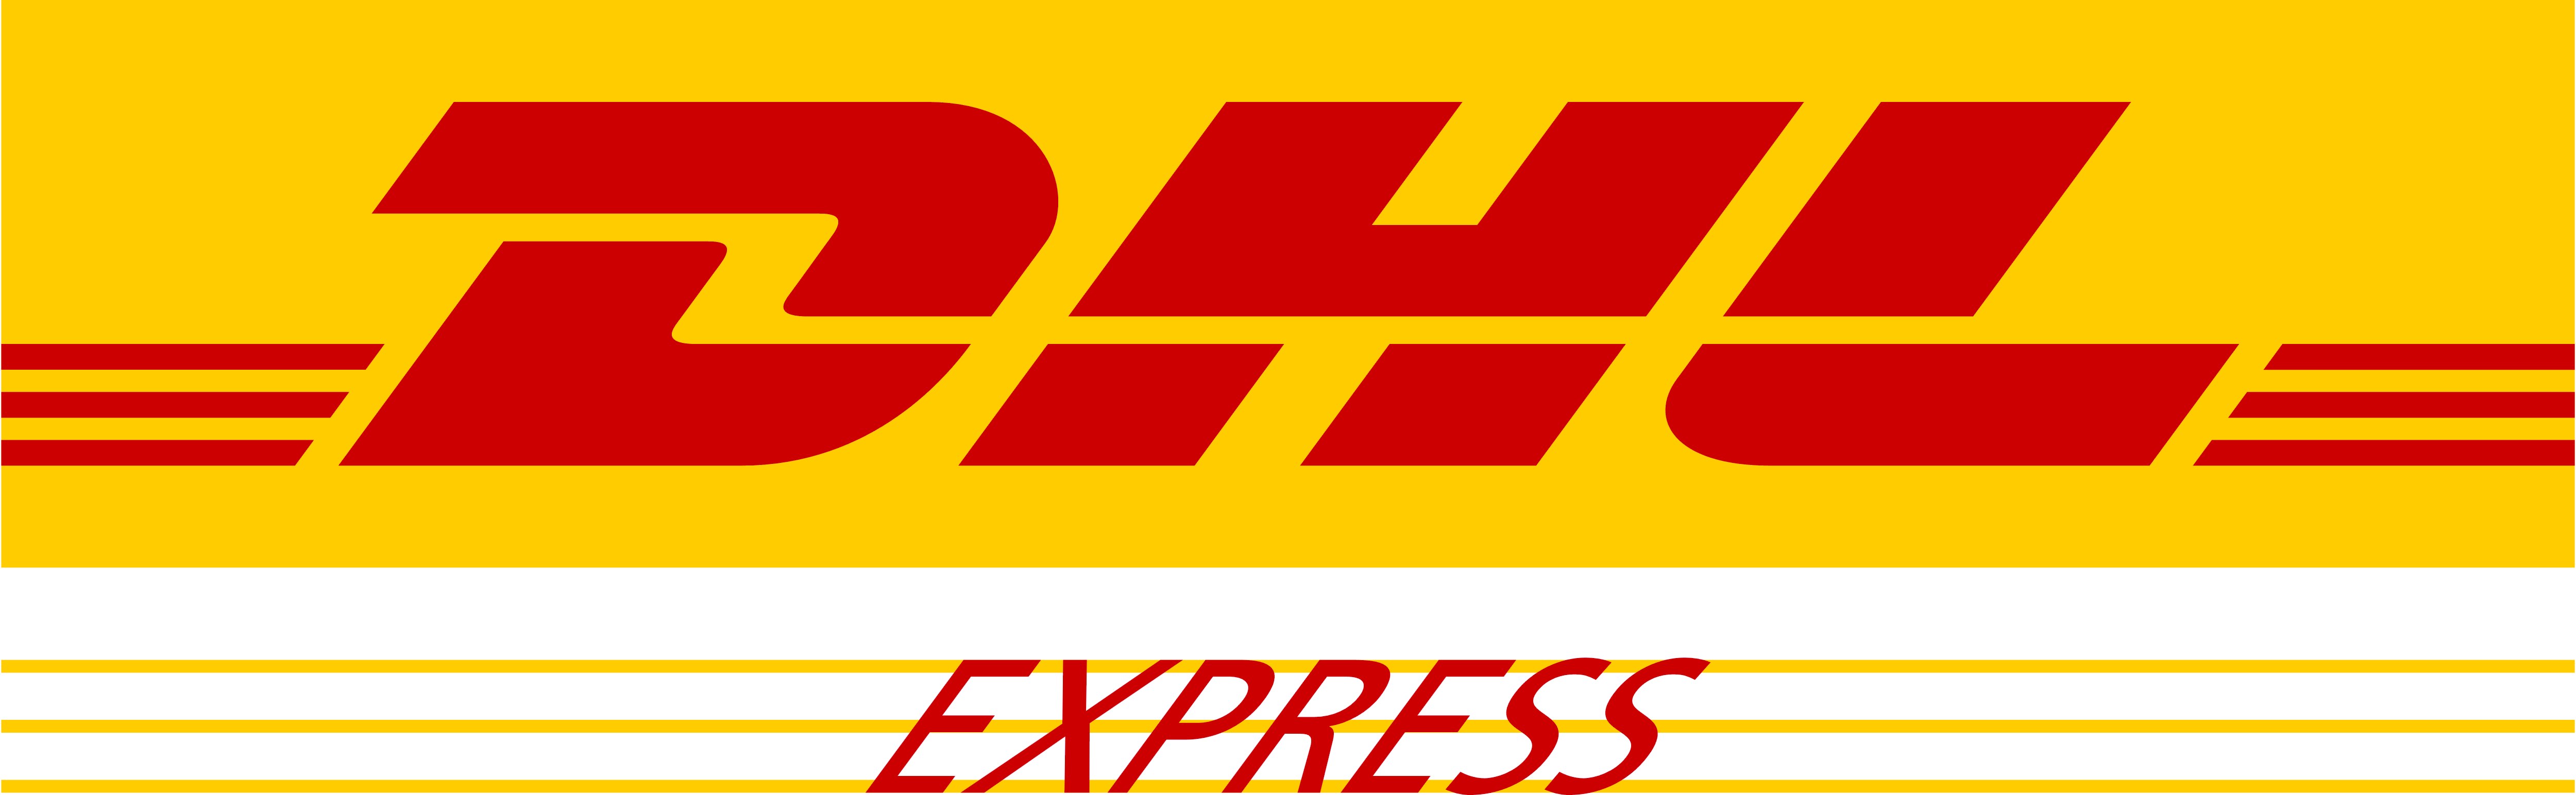 dhl-express-logo.png